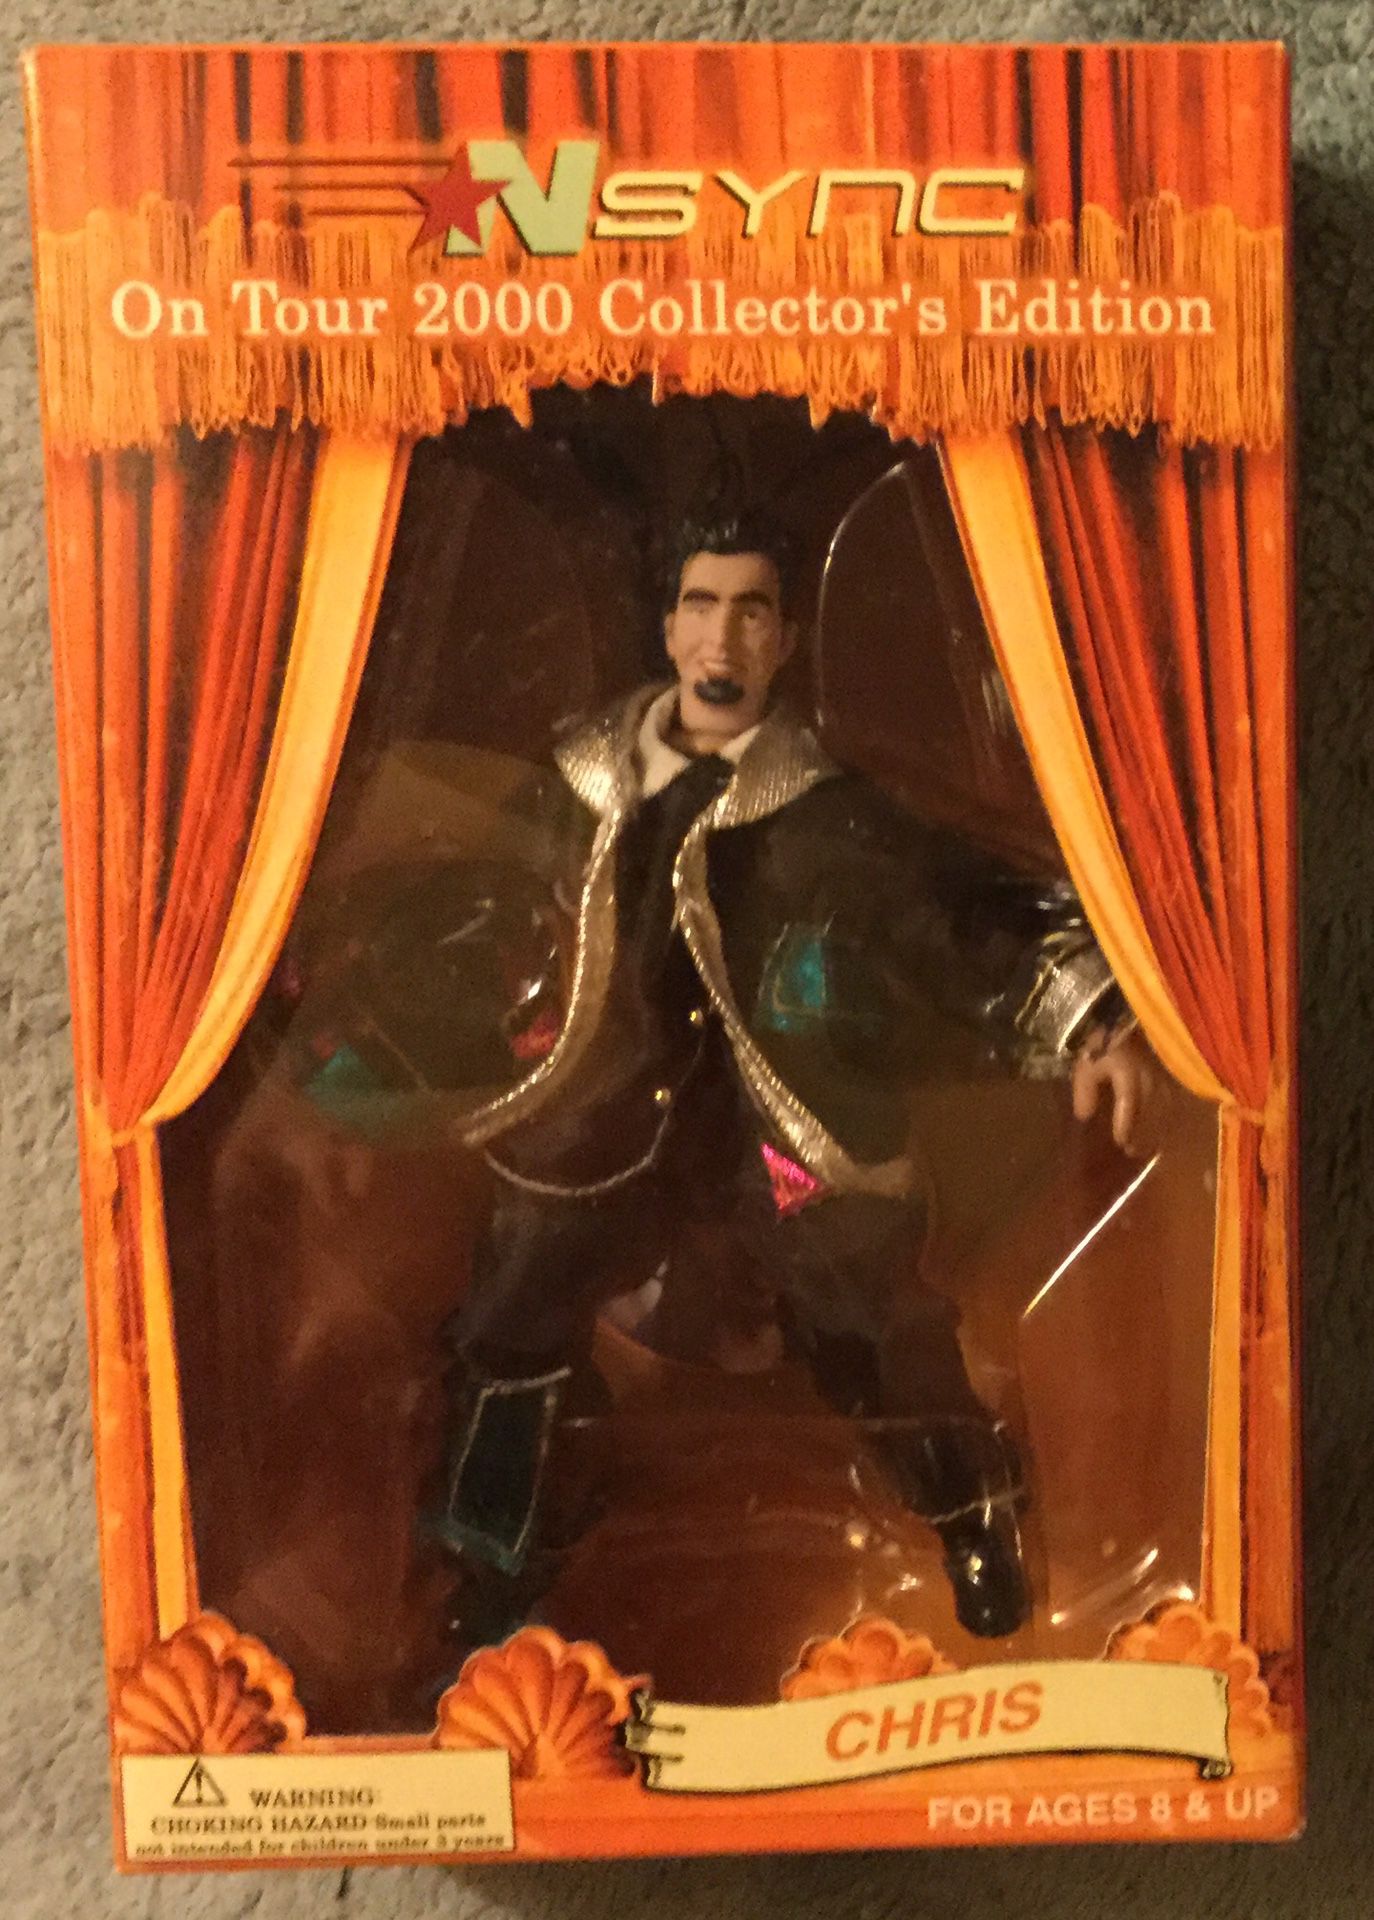 Vintage *NSYNC Chris Kirkpatrick 2000 Tour Marionette Action Figure - Near Mint Condition - Original Production Run